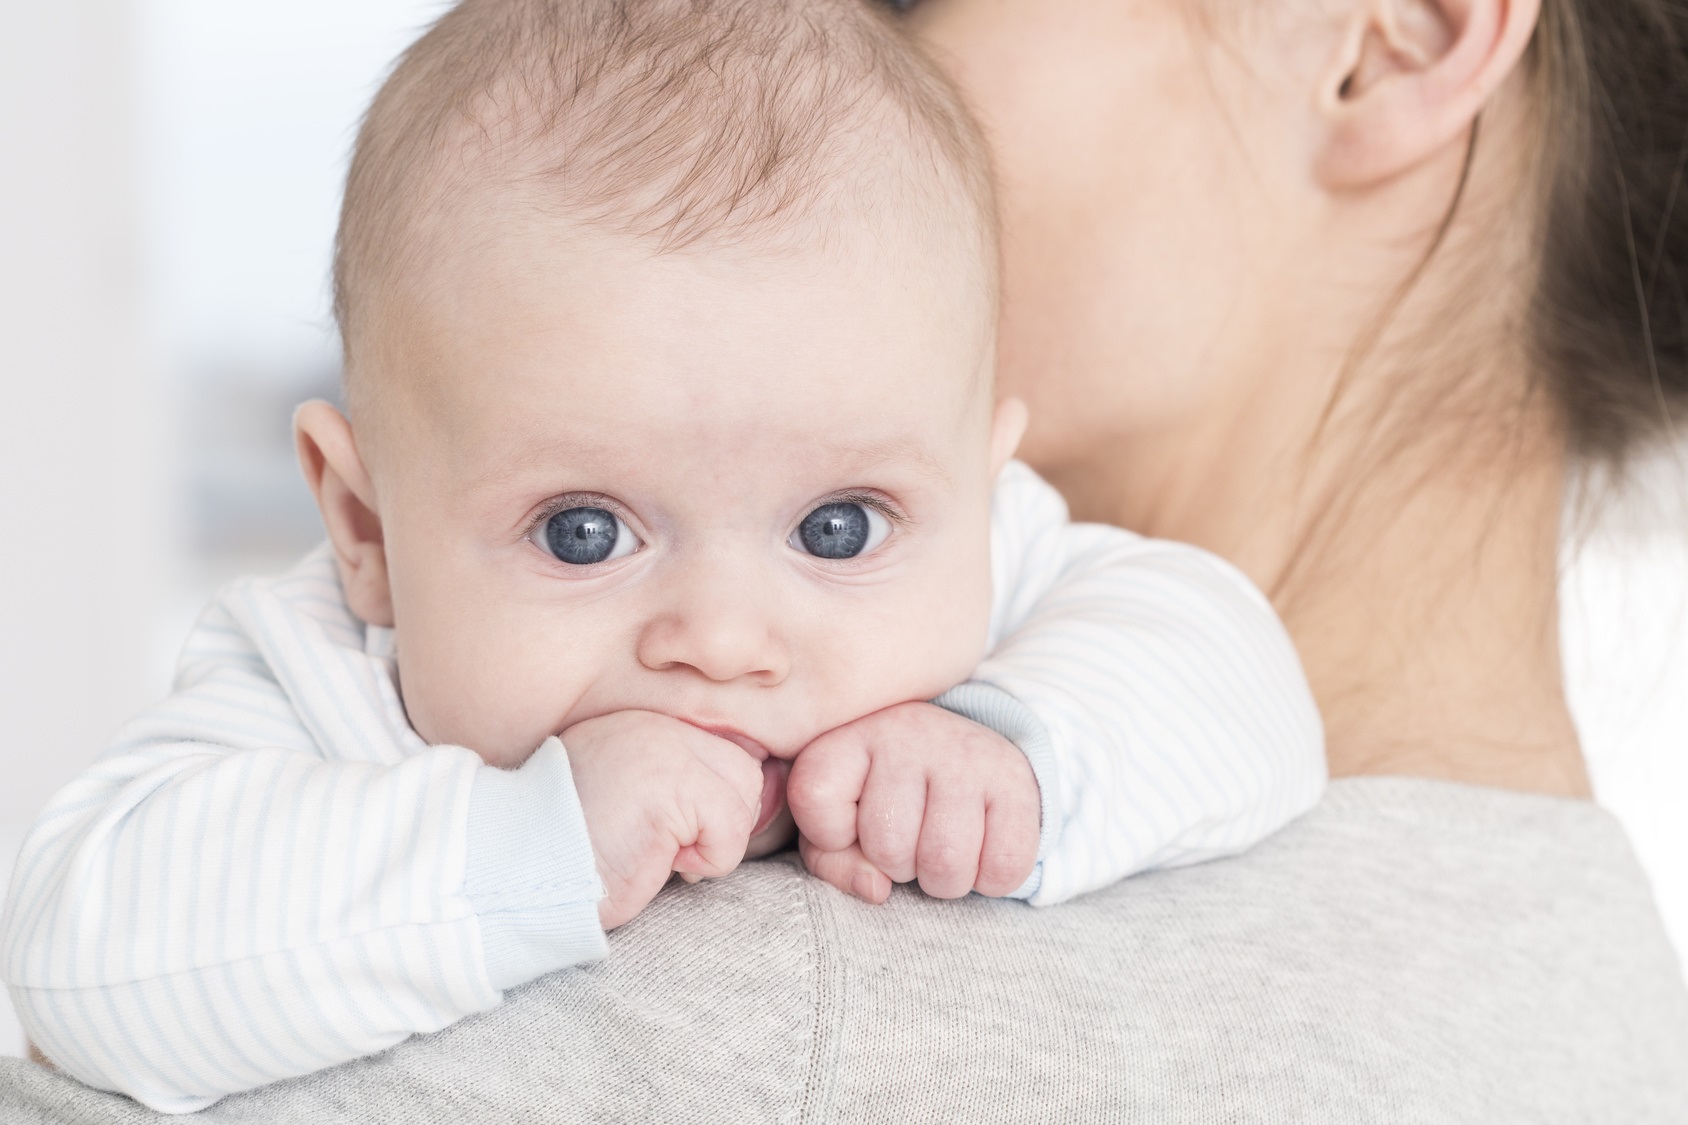 Une étude suggère l’existence d’un instinct maternel inné. © Photographee.eu, Fotolia